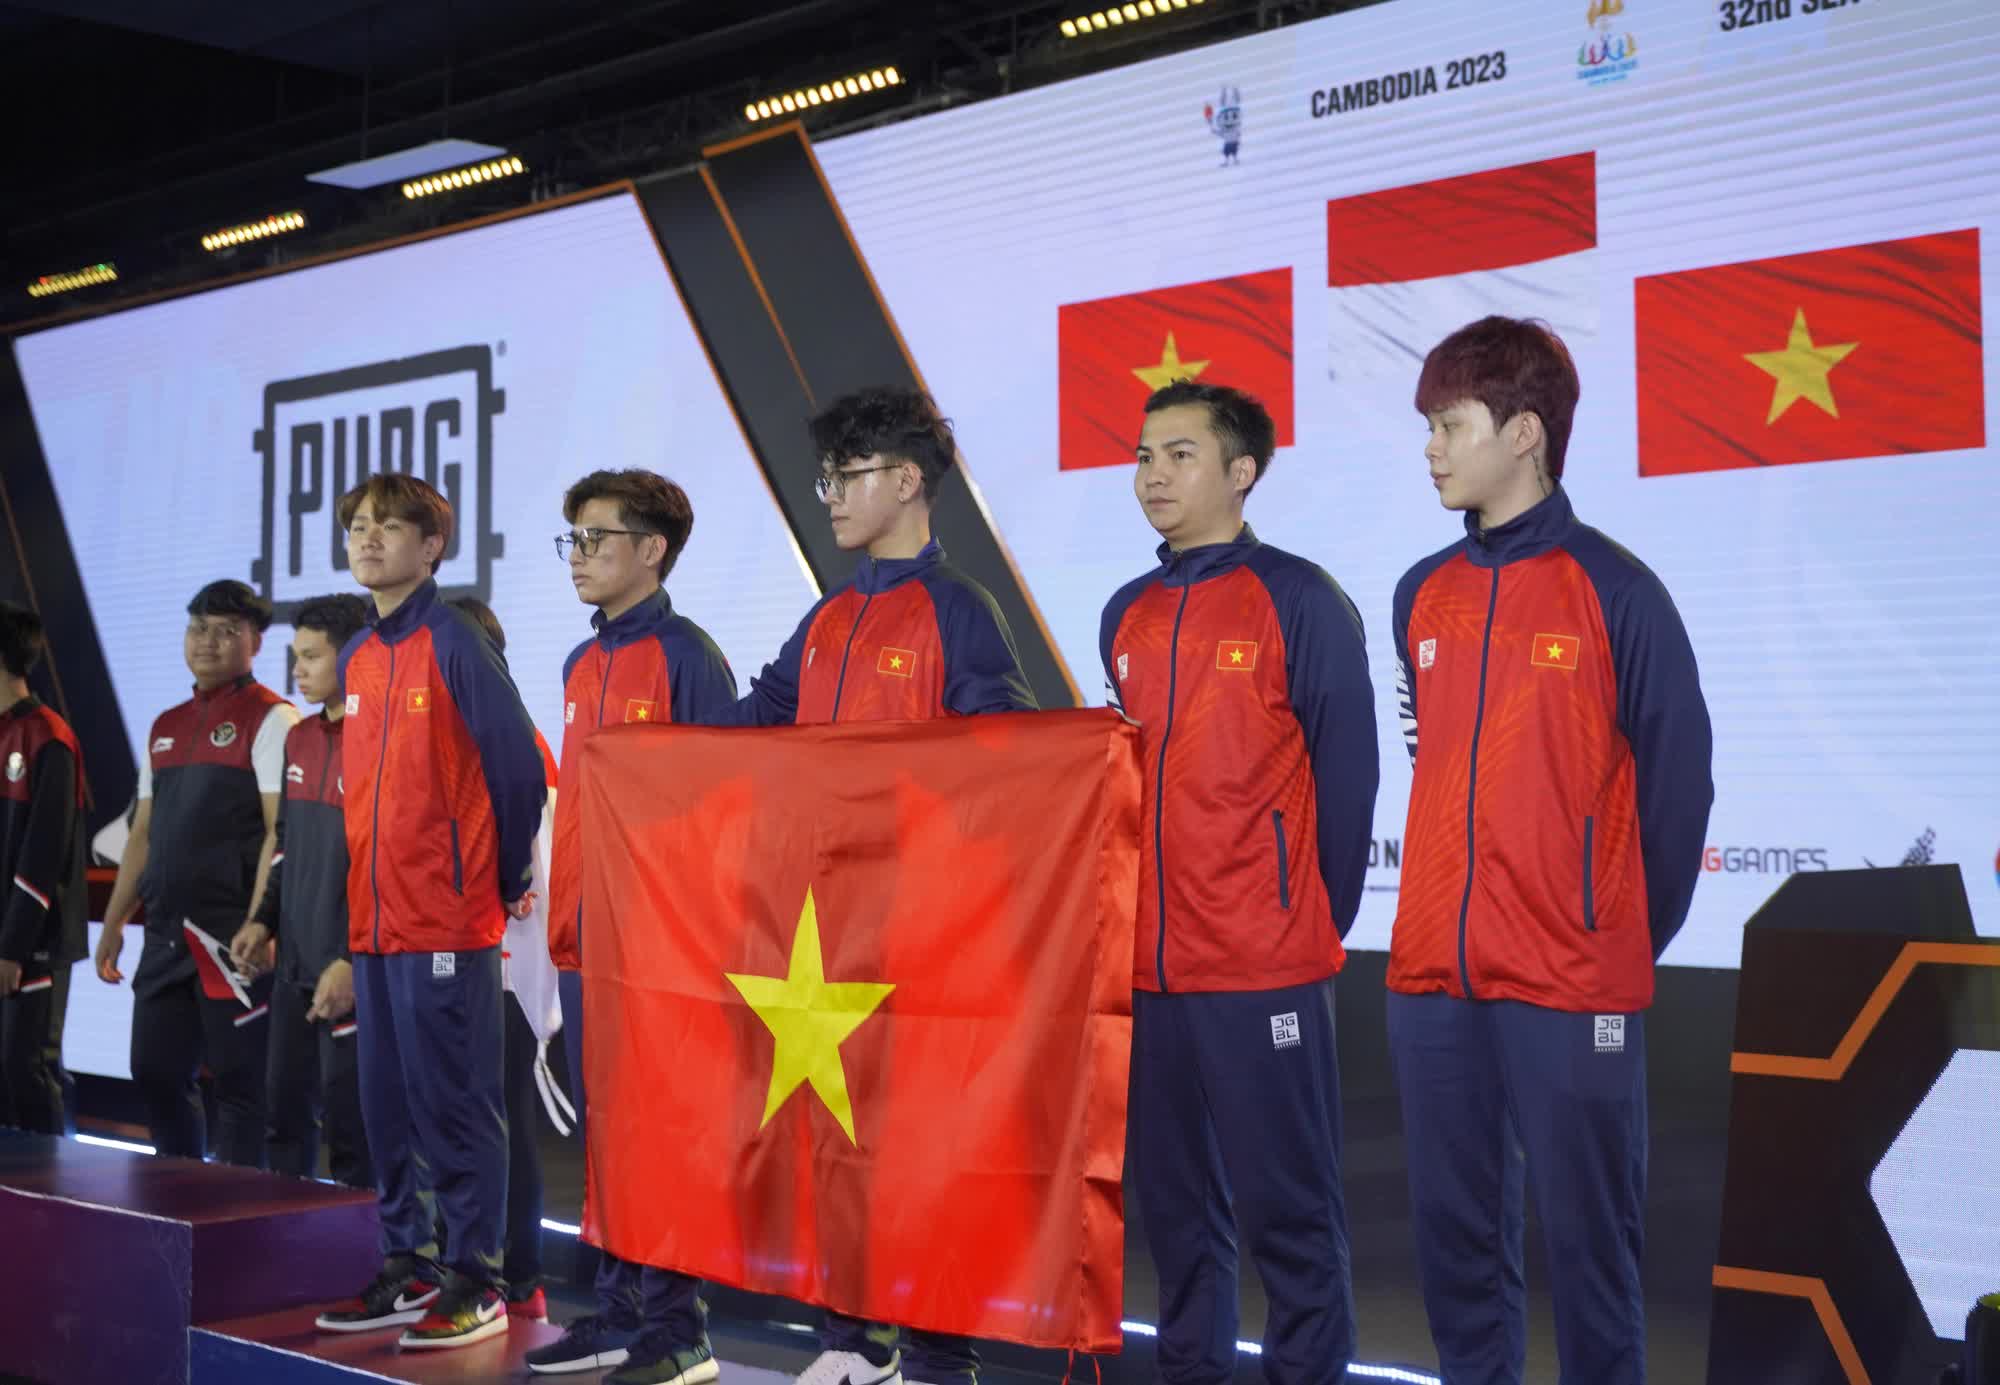 Lập cú đúp huy chương, tuyển thủ Việt bẽn lẽn tiết lộ kế hoạch 'relax' sau giải - Ảnh 1.